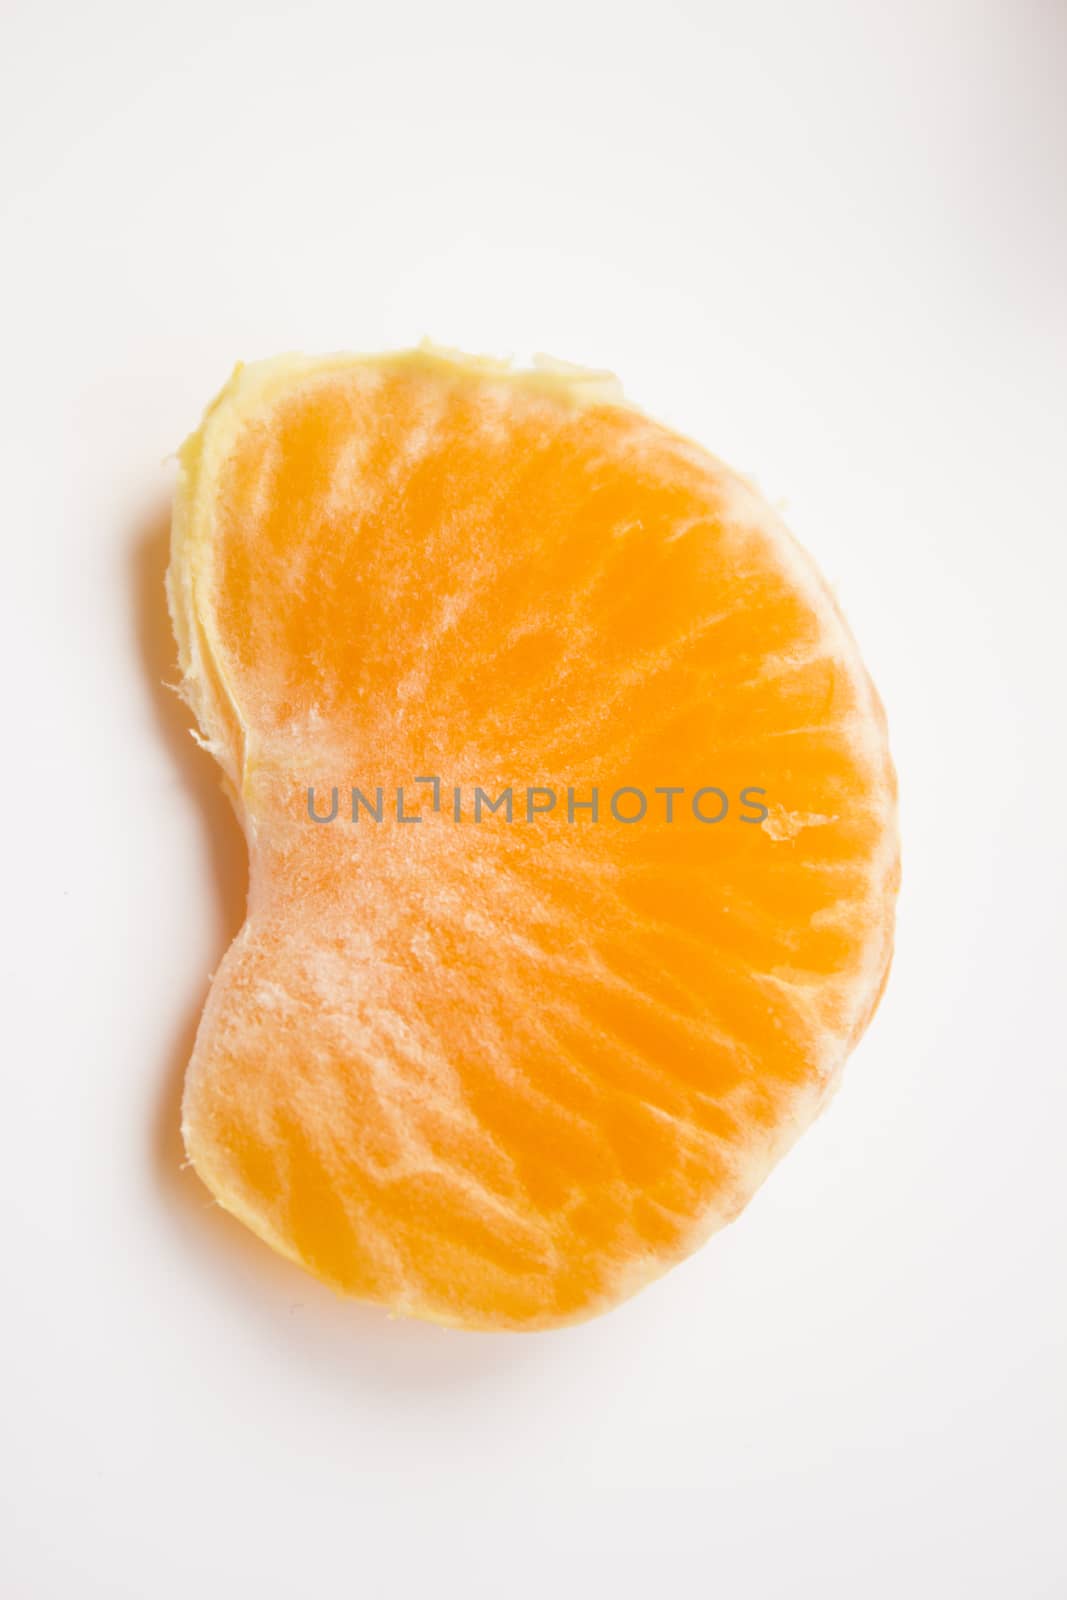 Vibrant mandarin fruit on a white background.